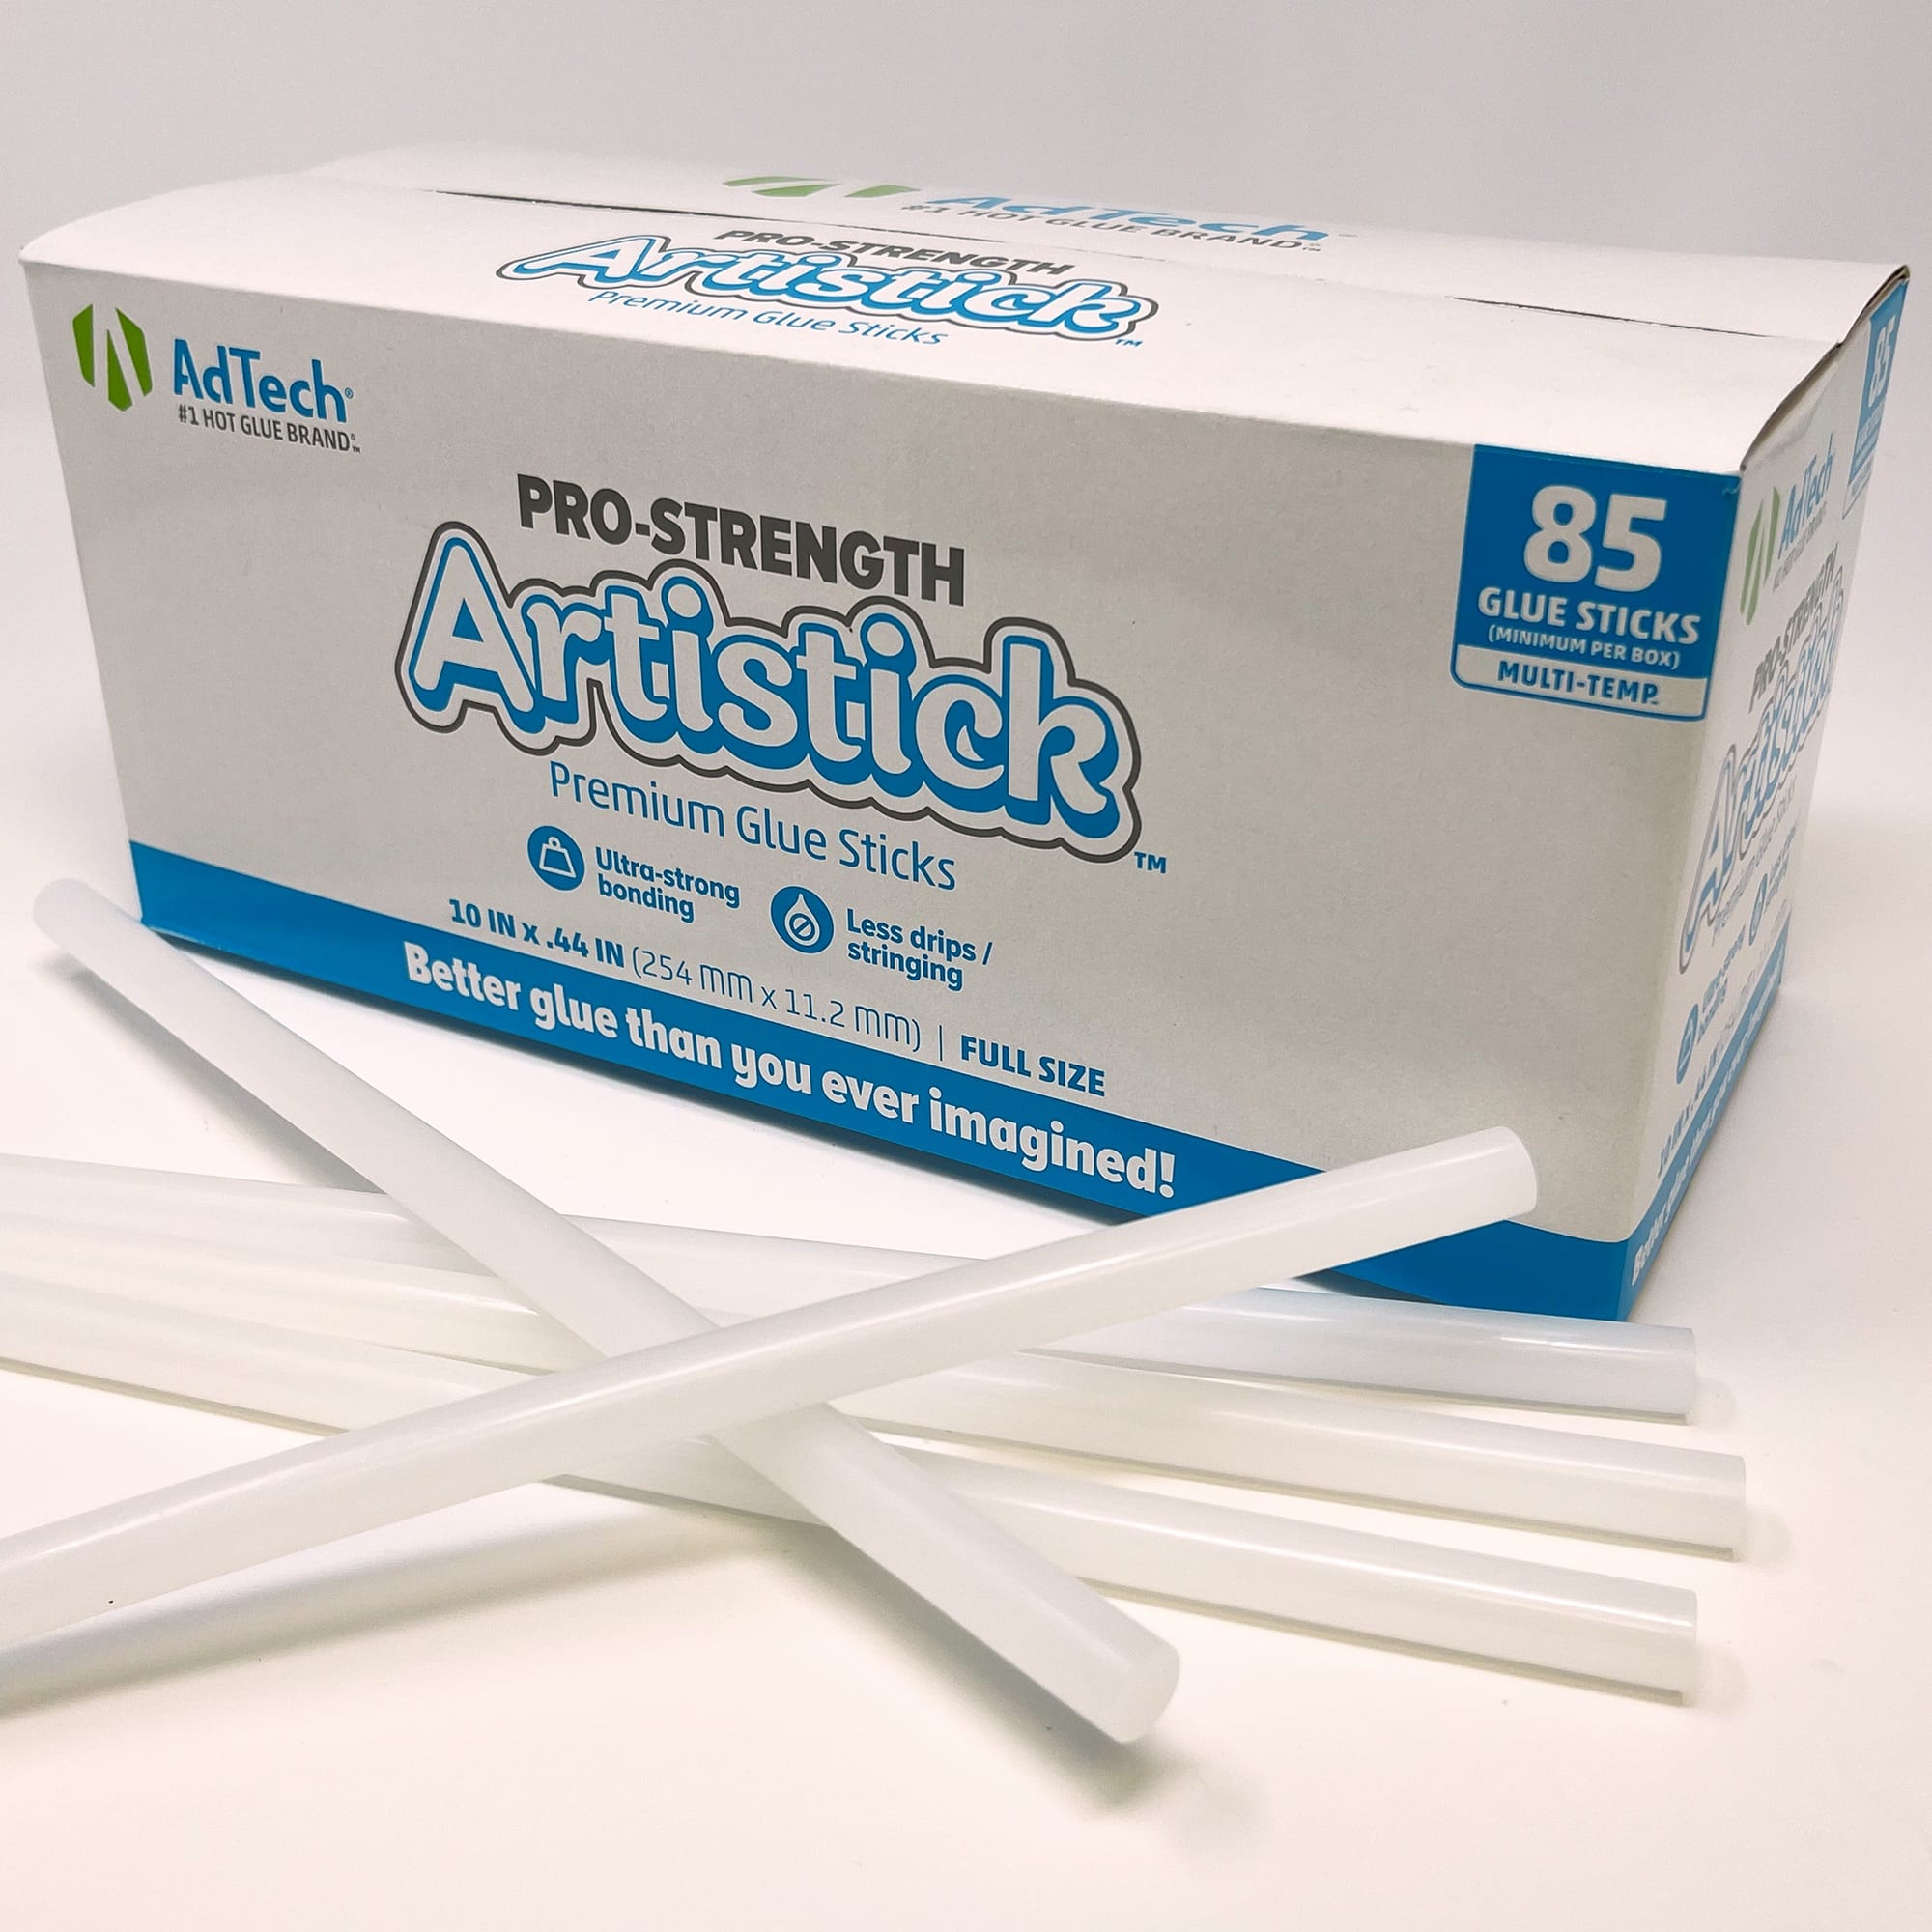 Adtech Premiere 10 Hot Glue Sticks Full size, 5#